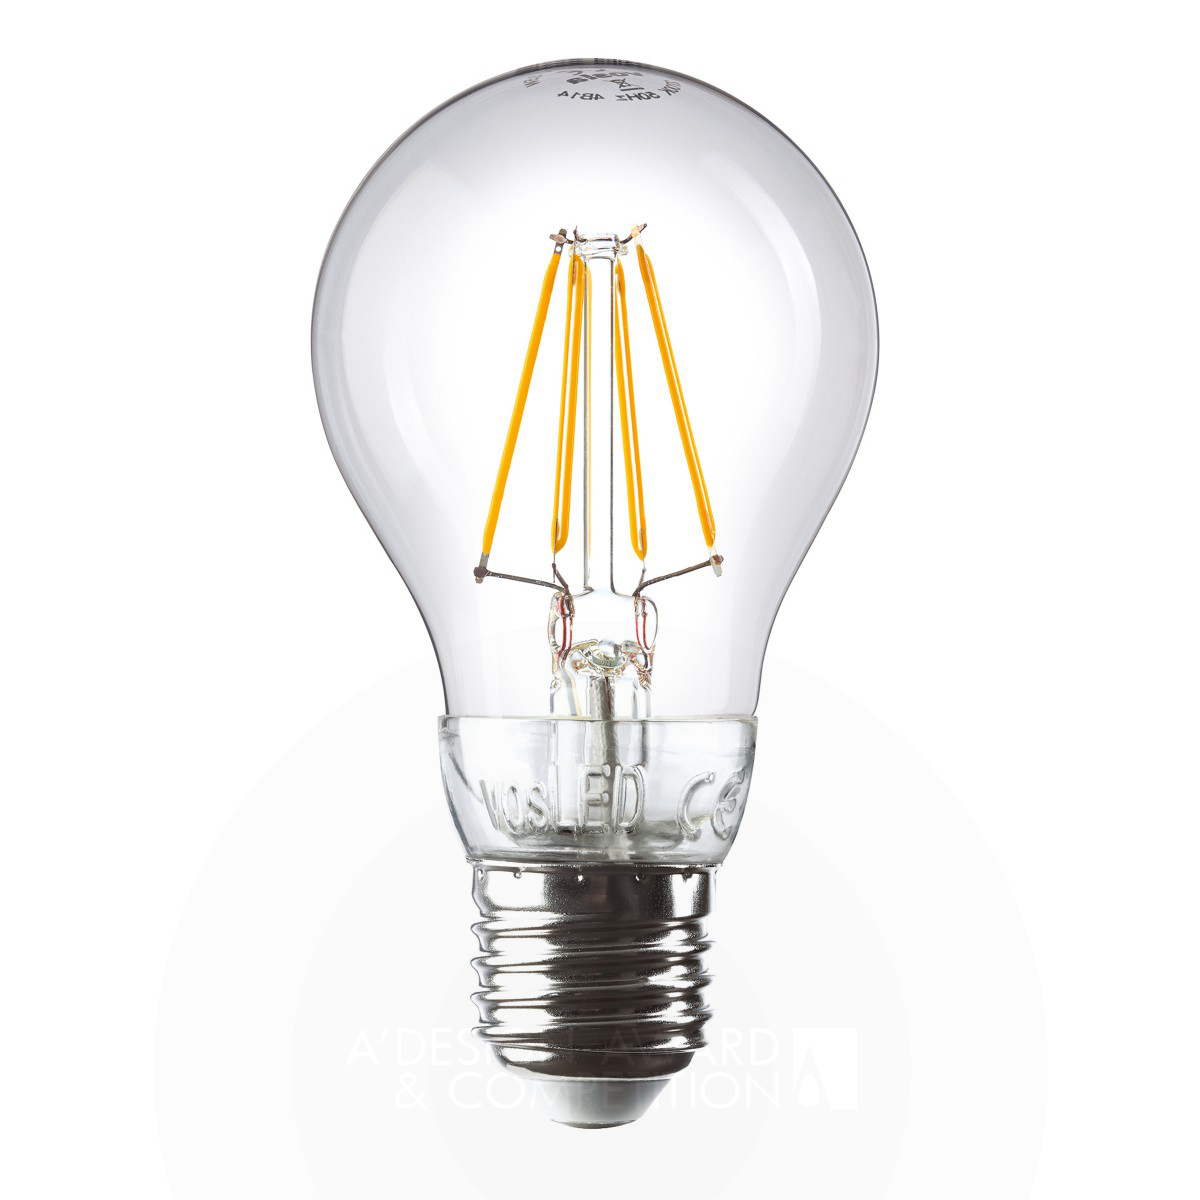 vosled LED-filament light bulb by Martin Enenkel